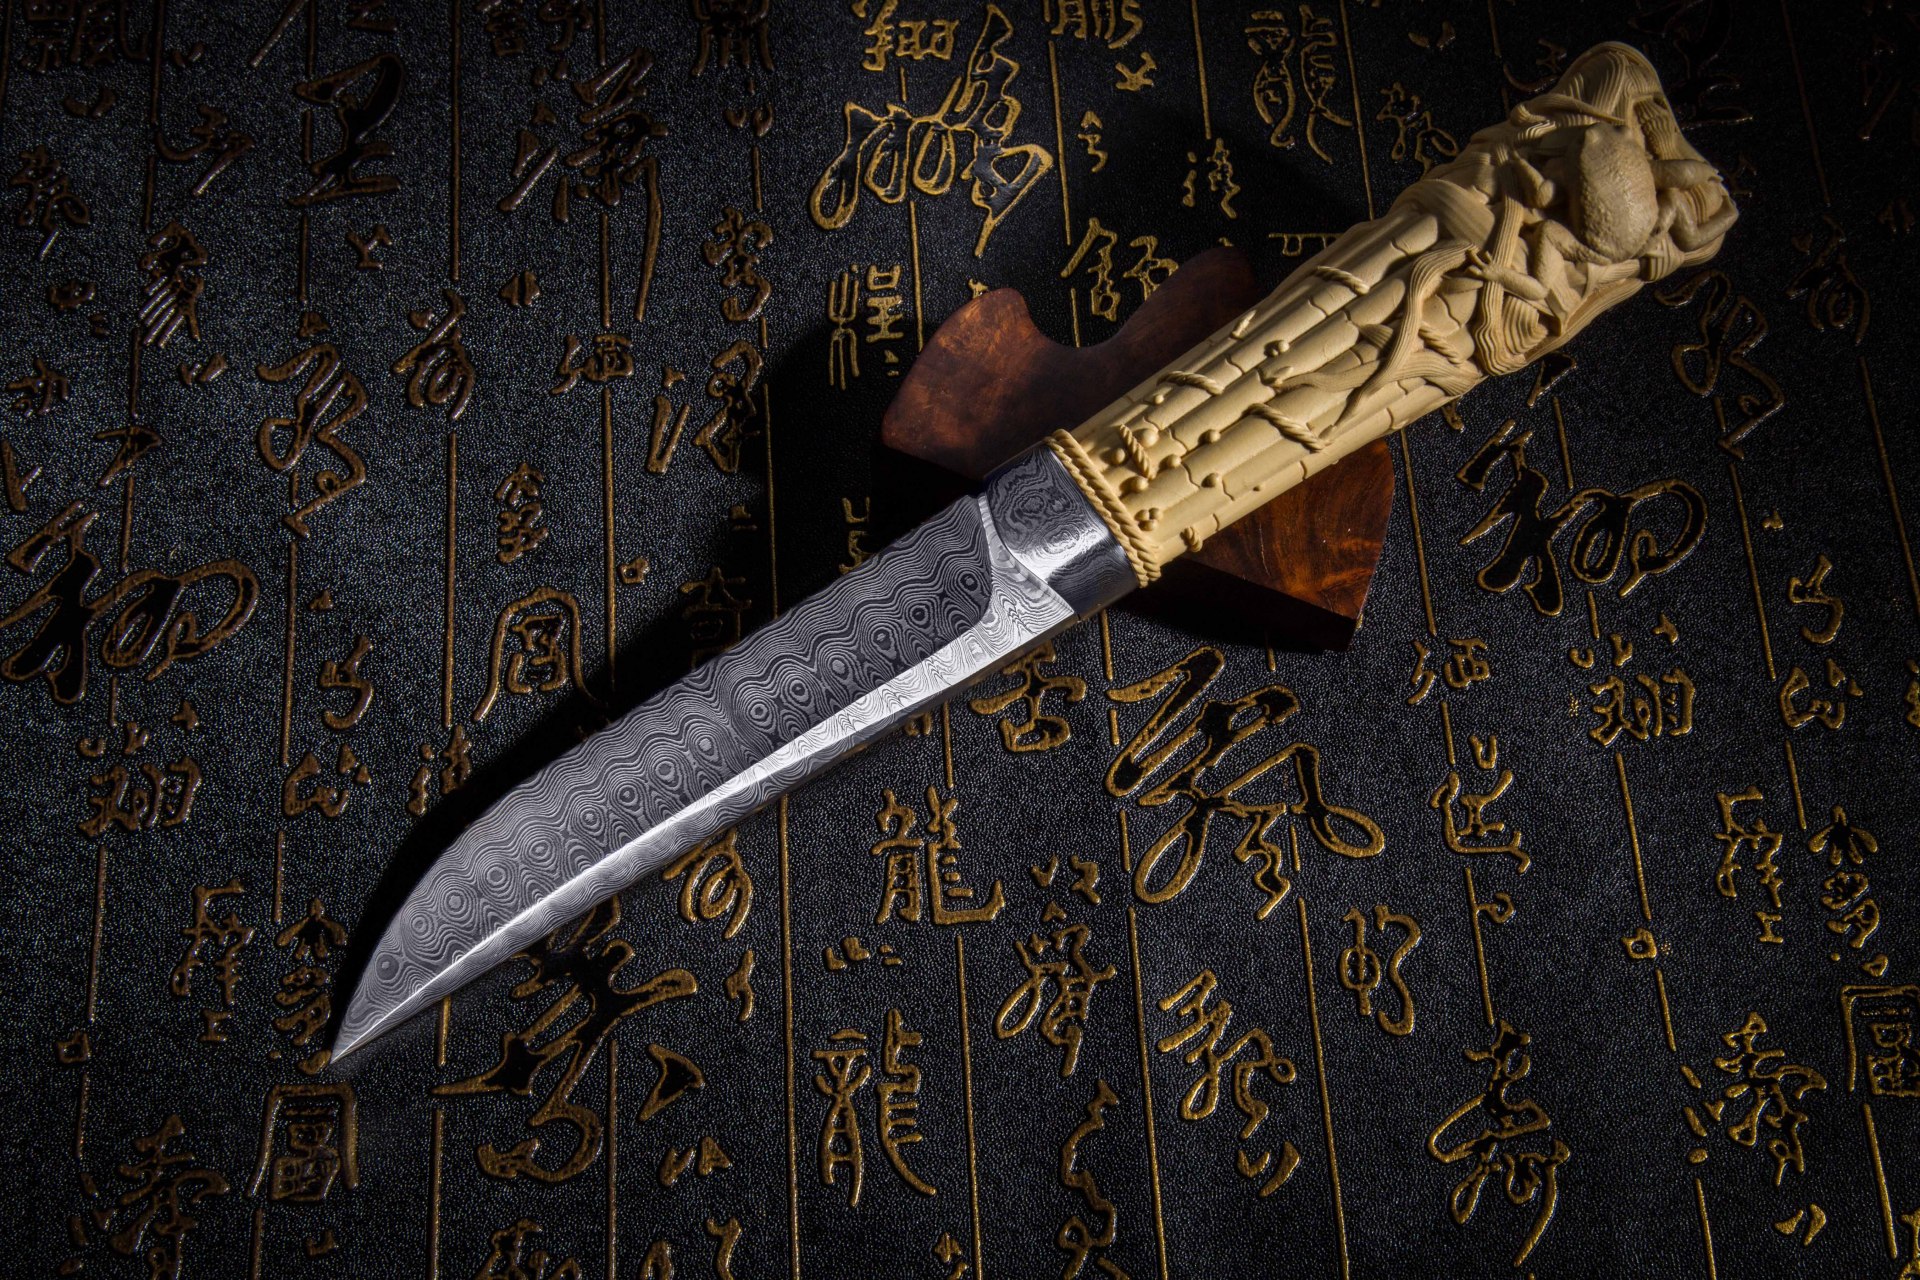 书刀,一种中国古代书写工具,因外形通常为一尺余的小刀,所以又称尺刀.